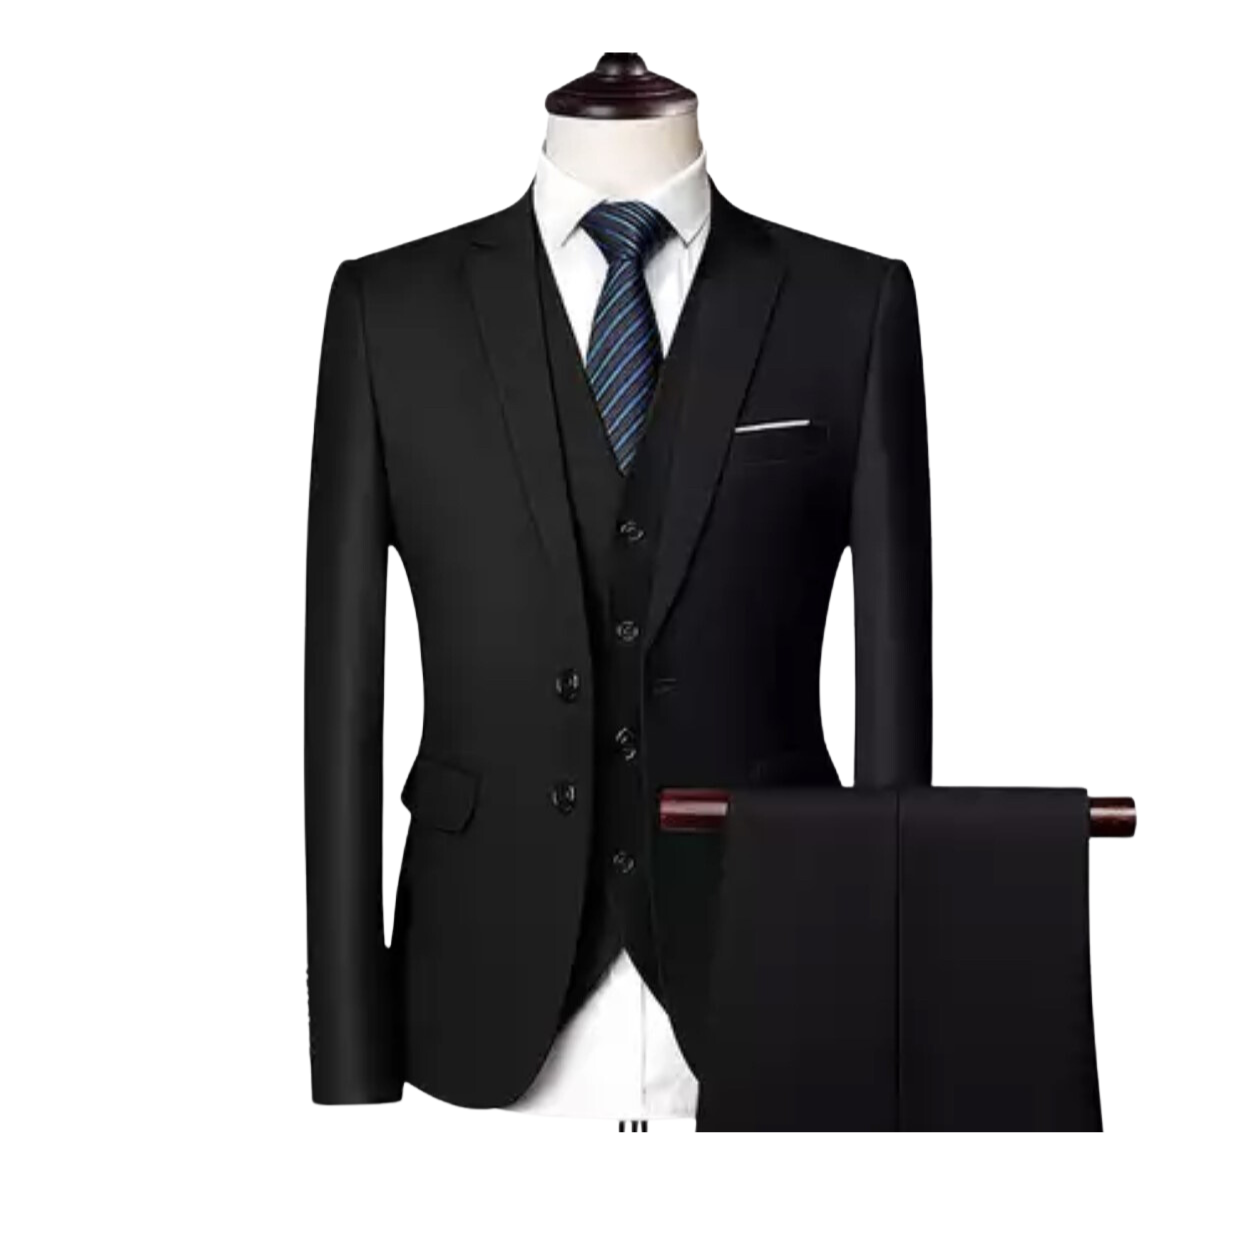 OMC Signature Men's 3-Pieces Slim Fit Suit Black